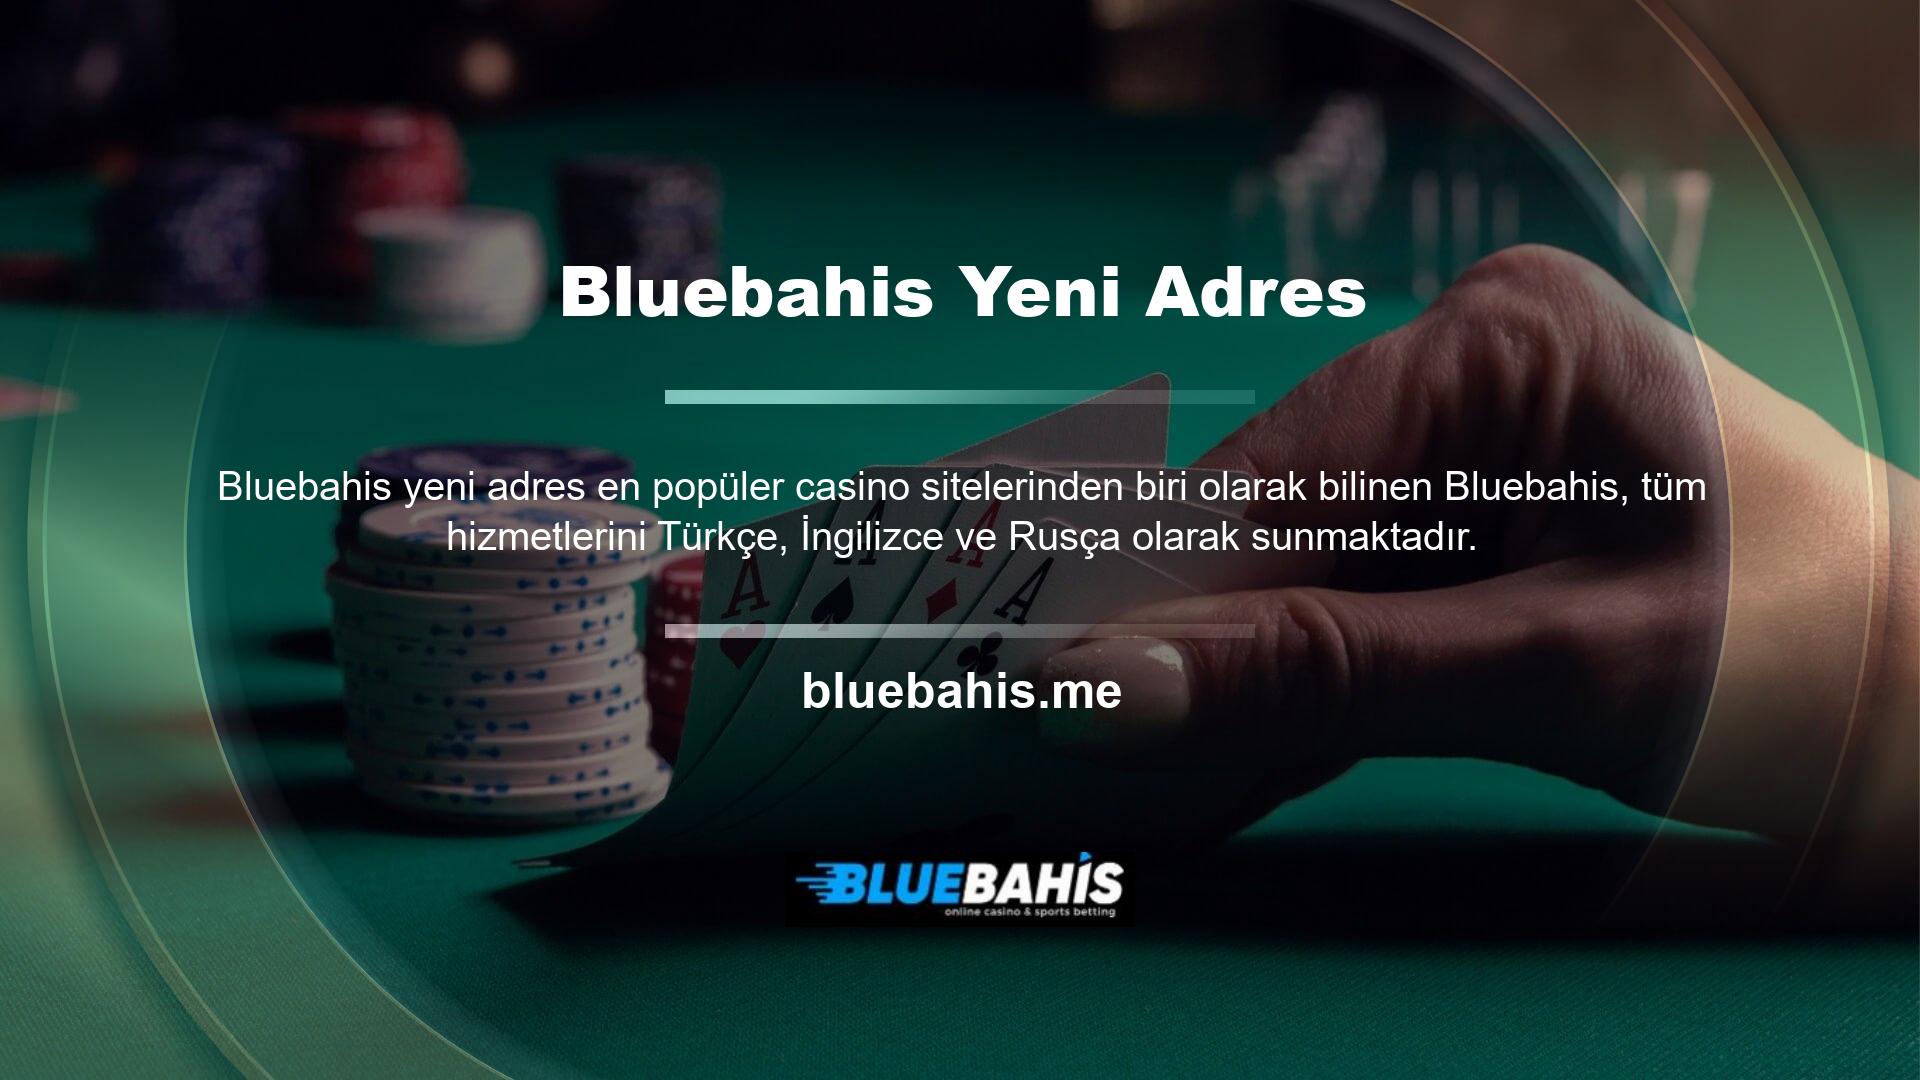 Bluebahis web sitesi en ilgi çekici bahis bölümünü çok güvenli oranlarla sunmaktadır